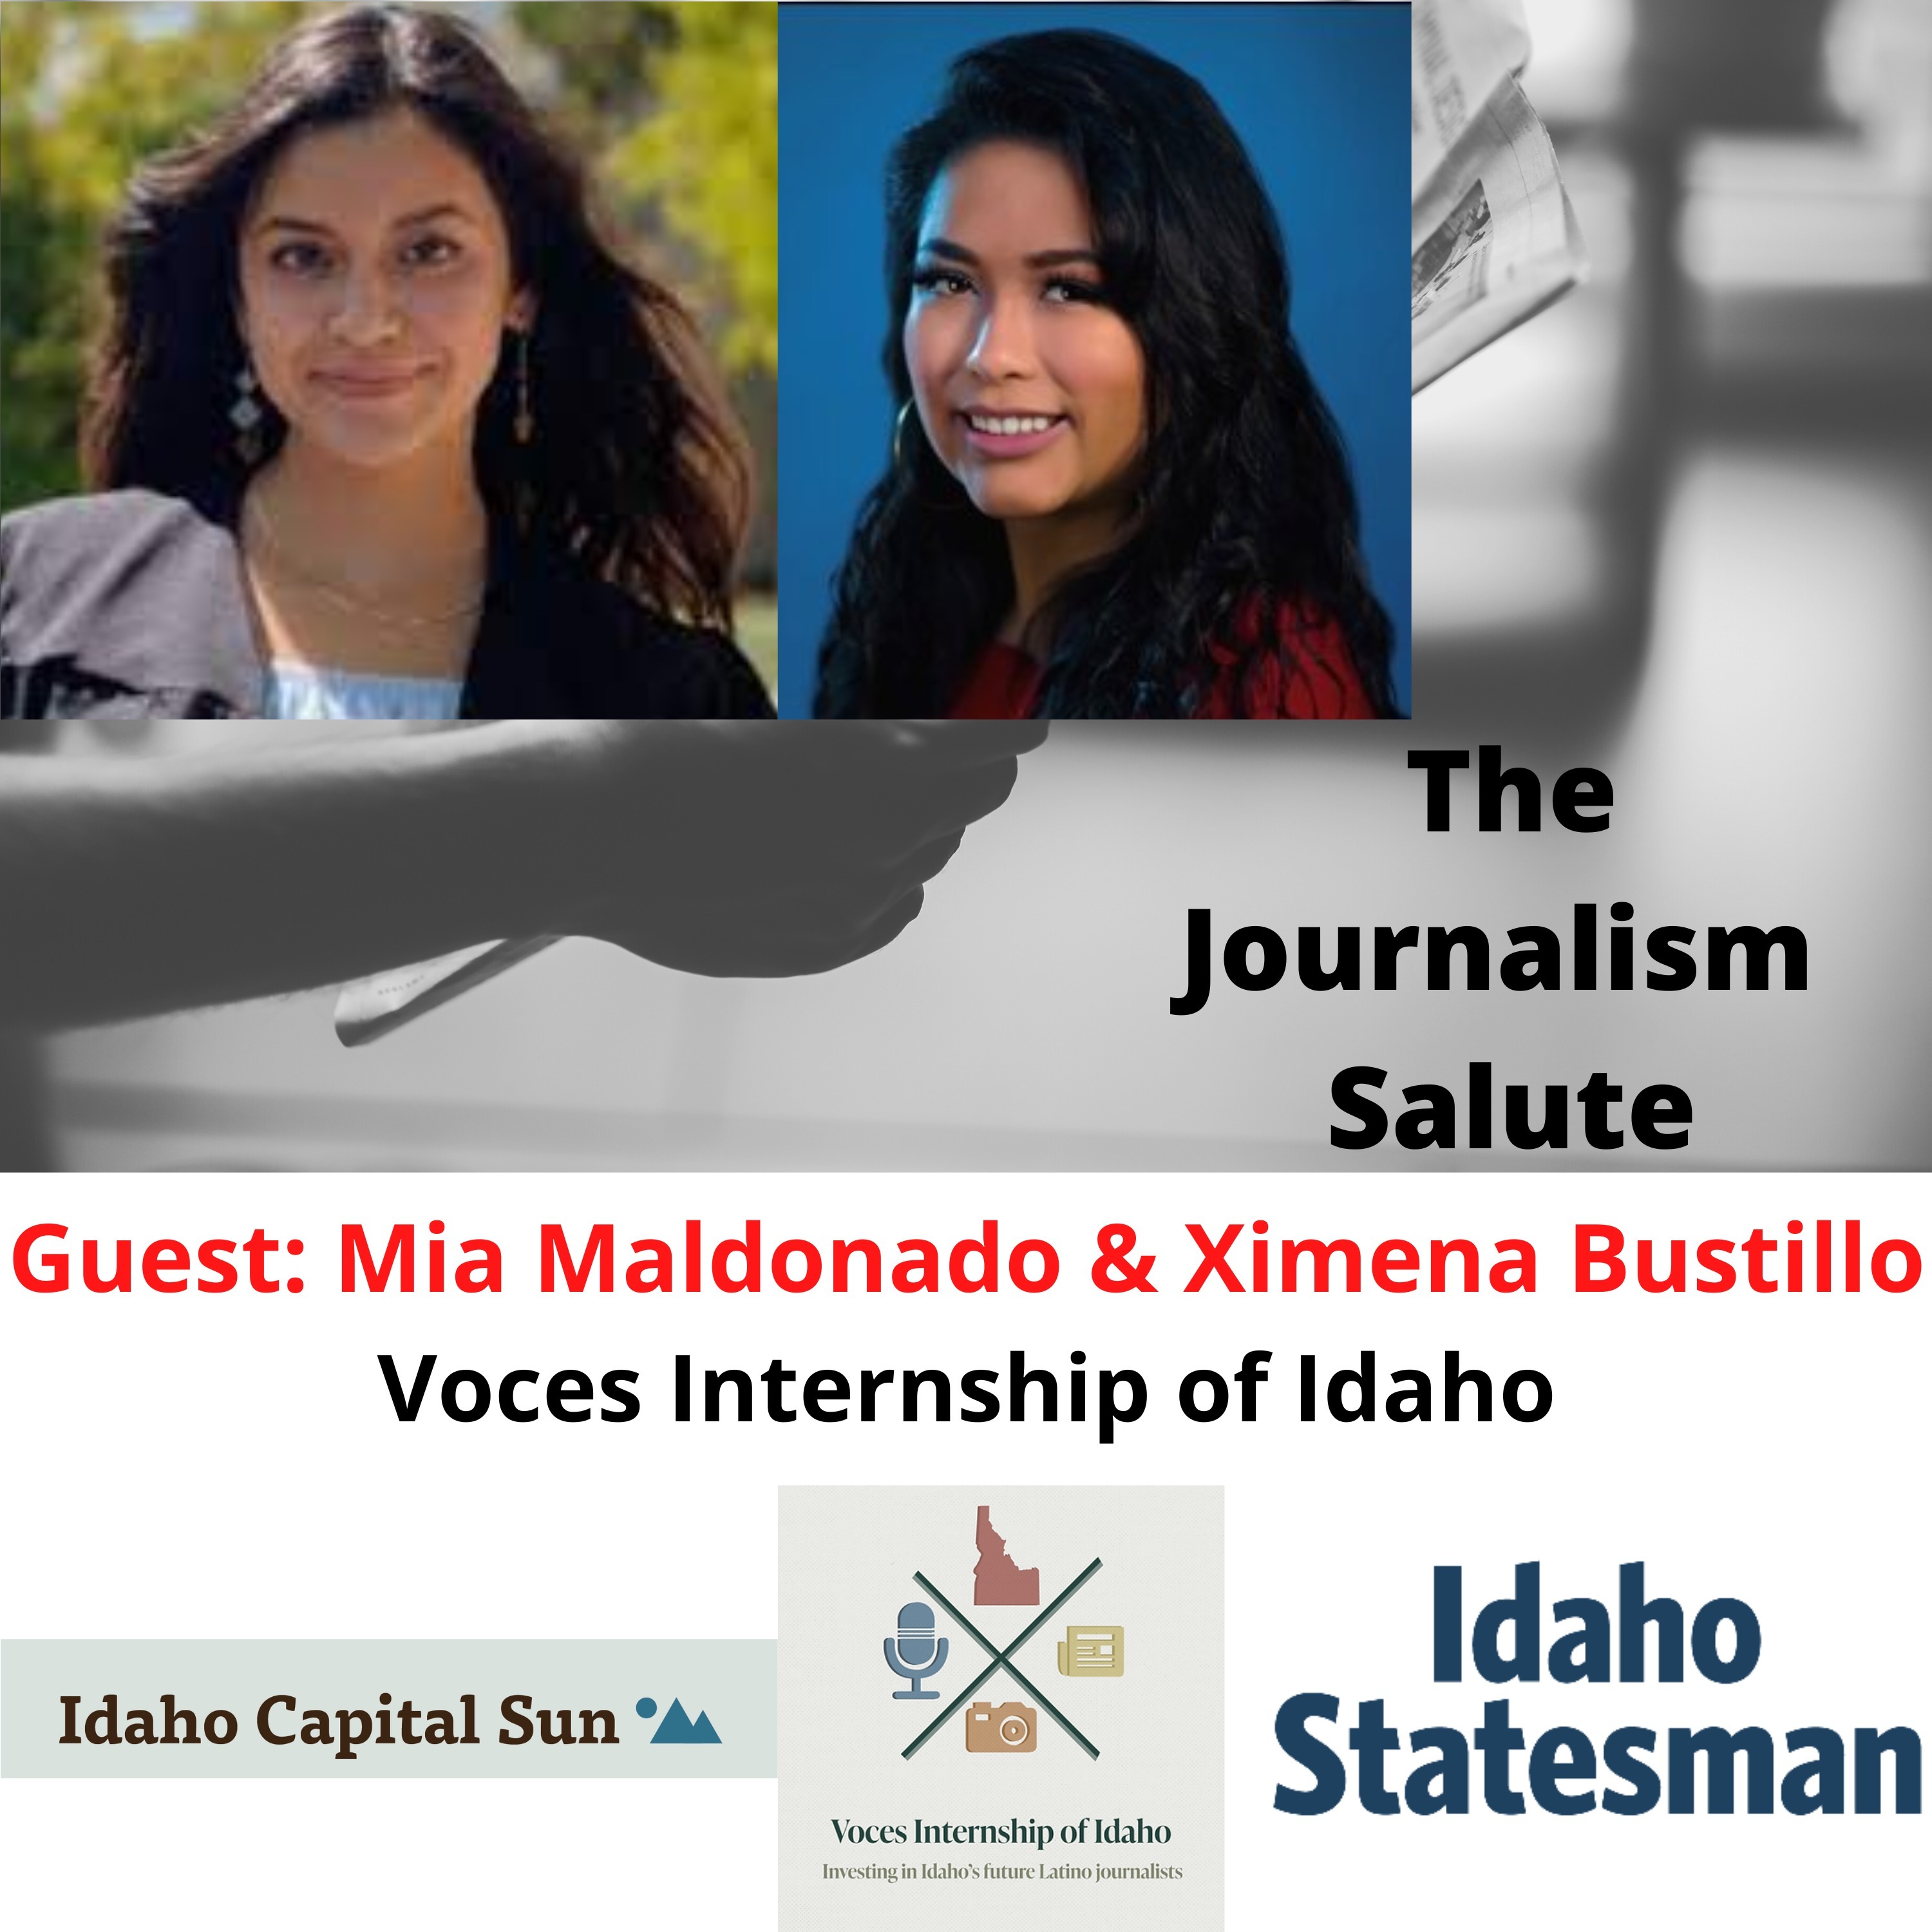 Mia Maldonado & Ximena Bustillo, Voces Internship of Idaho